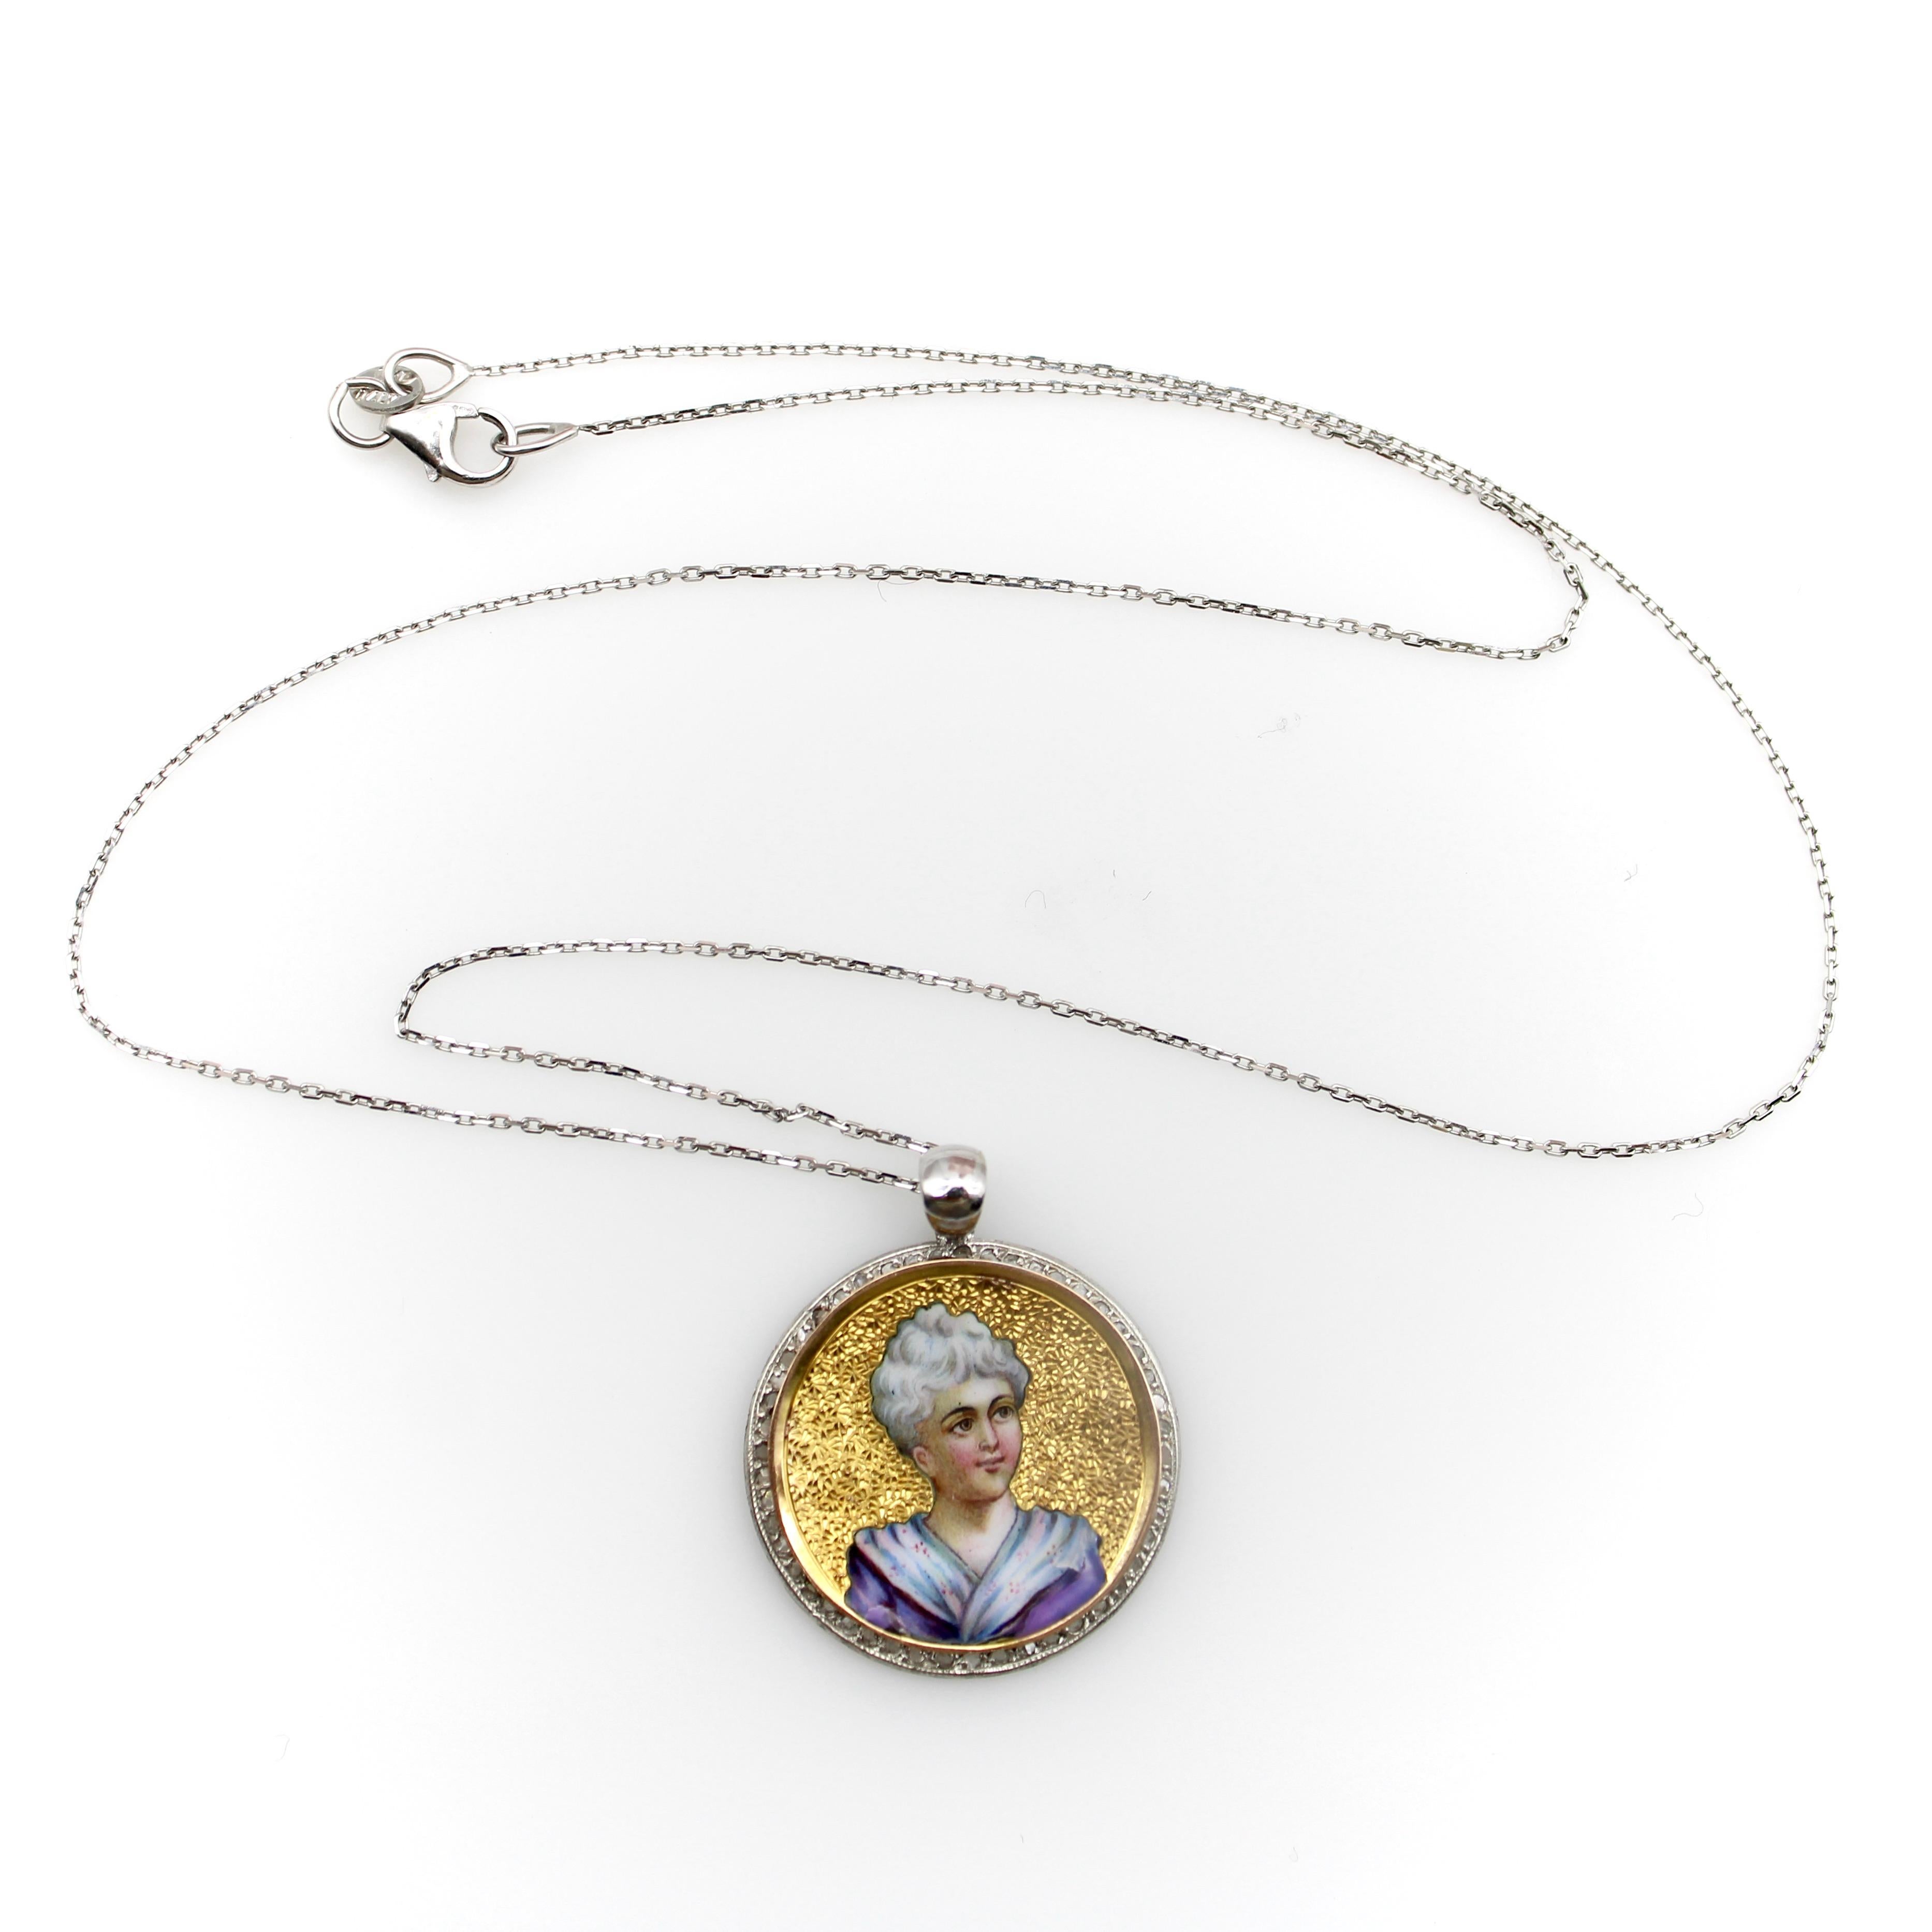 Ein hübsches viktorianisches, mit Emaille bemaltes Miniaturporträt einer Dame in einem Medaillon, umgeben von winzigen Diamanten im Rosenschliff auf Platin. Das Medaillon misst 7/8 Zoll und hat ein konkaves Design, mit 14-karätigem Gold und